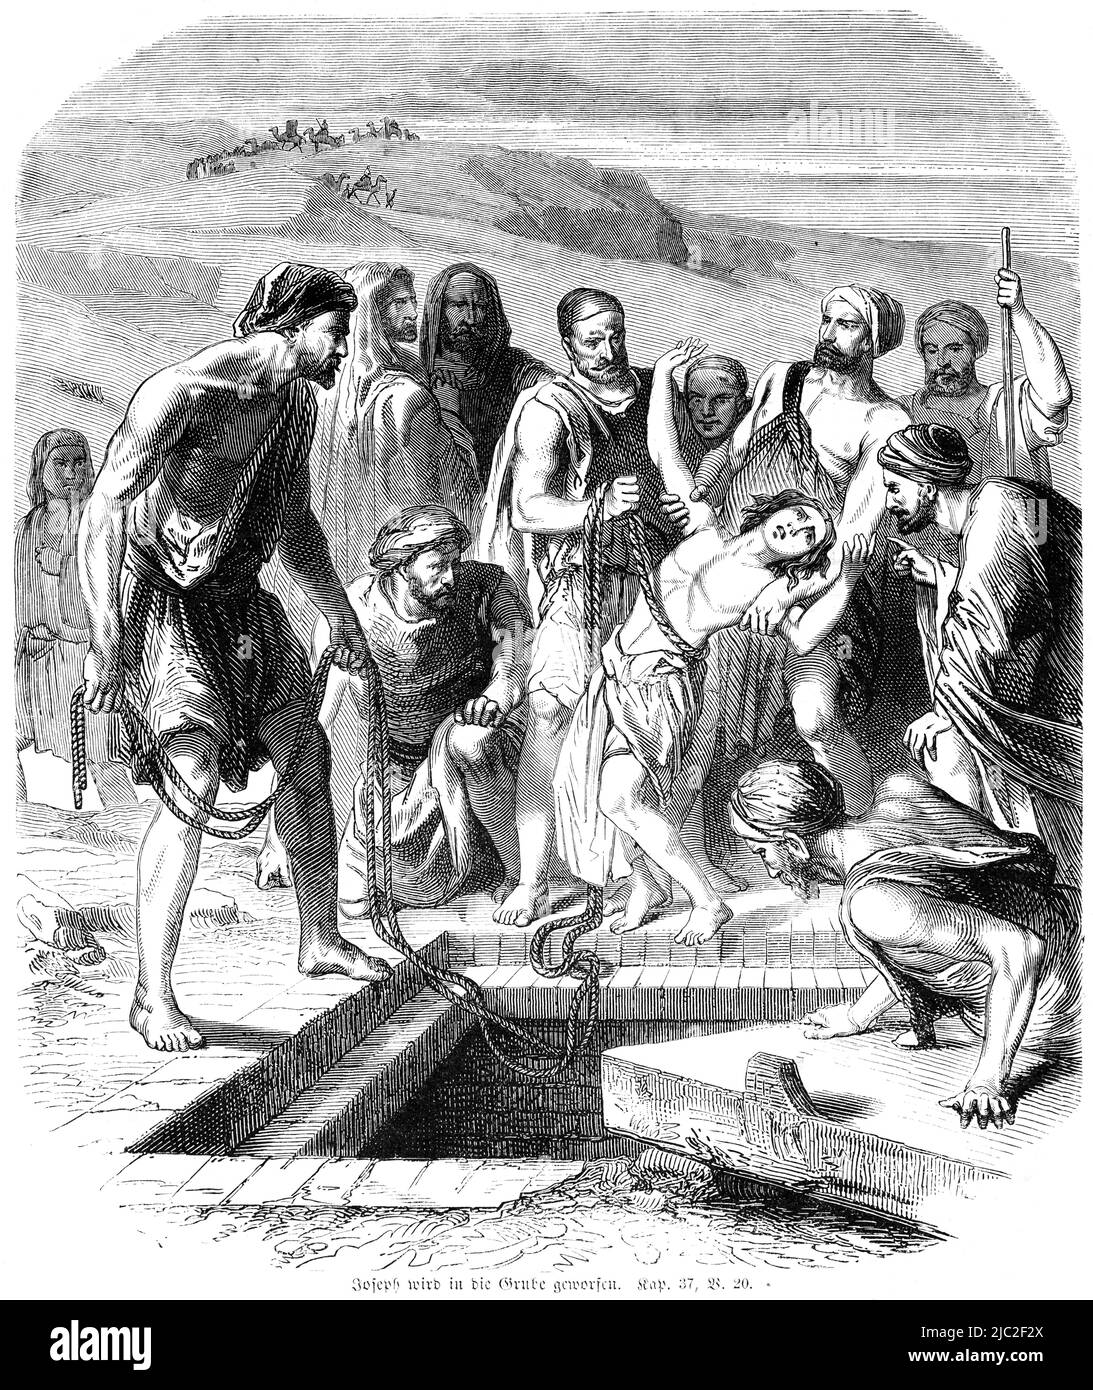 Joseph est jeté dans une fosse, Bible, ancien Testament, Premier Livre de Moïse, Genèse, Chapitre 37, verset 20, Illustration historique 1850 Banque D'Images